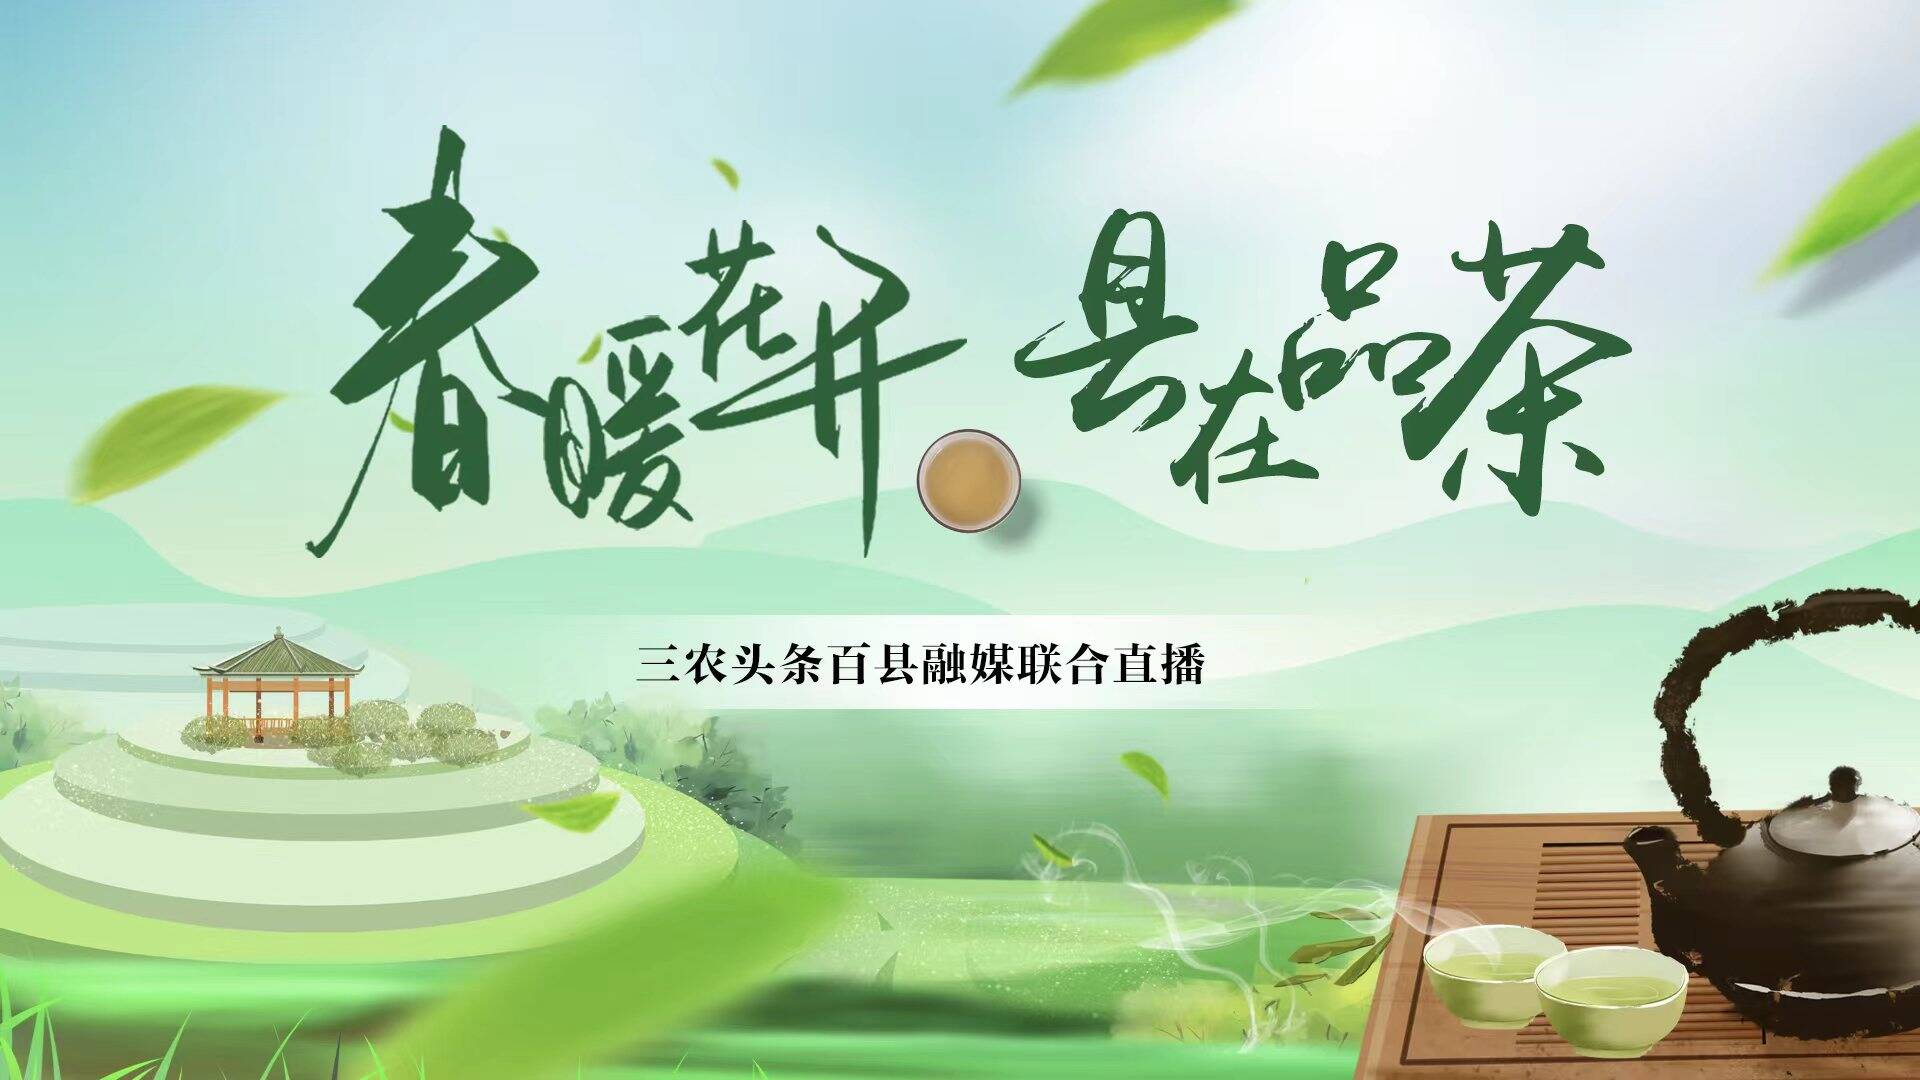 《春暖花开-县在品茶》系列网络直播